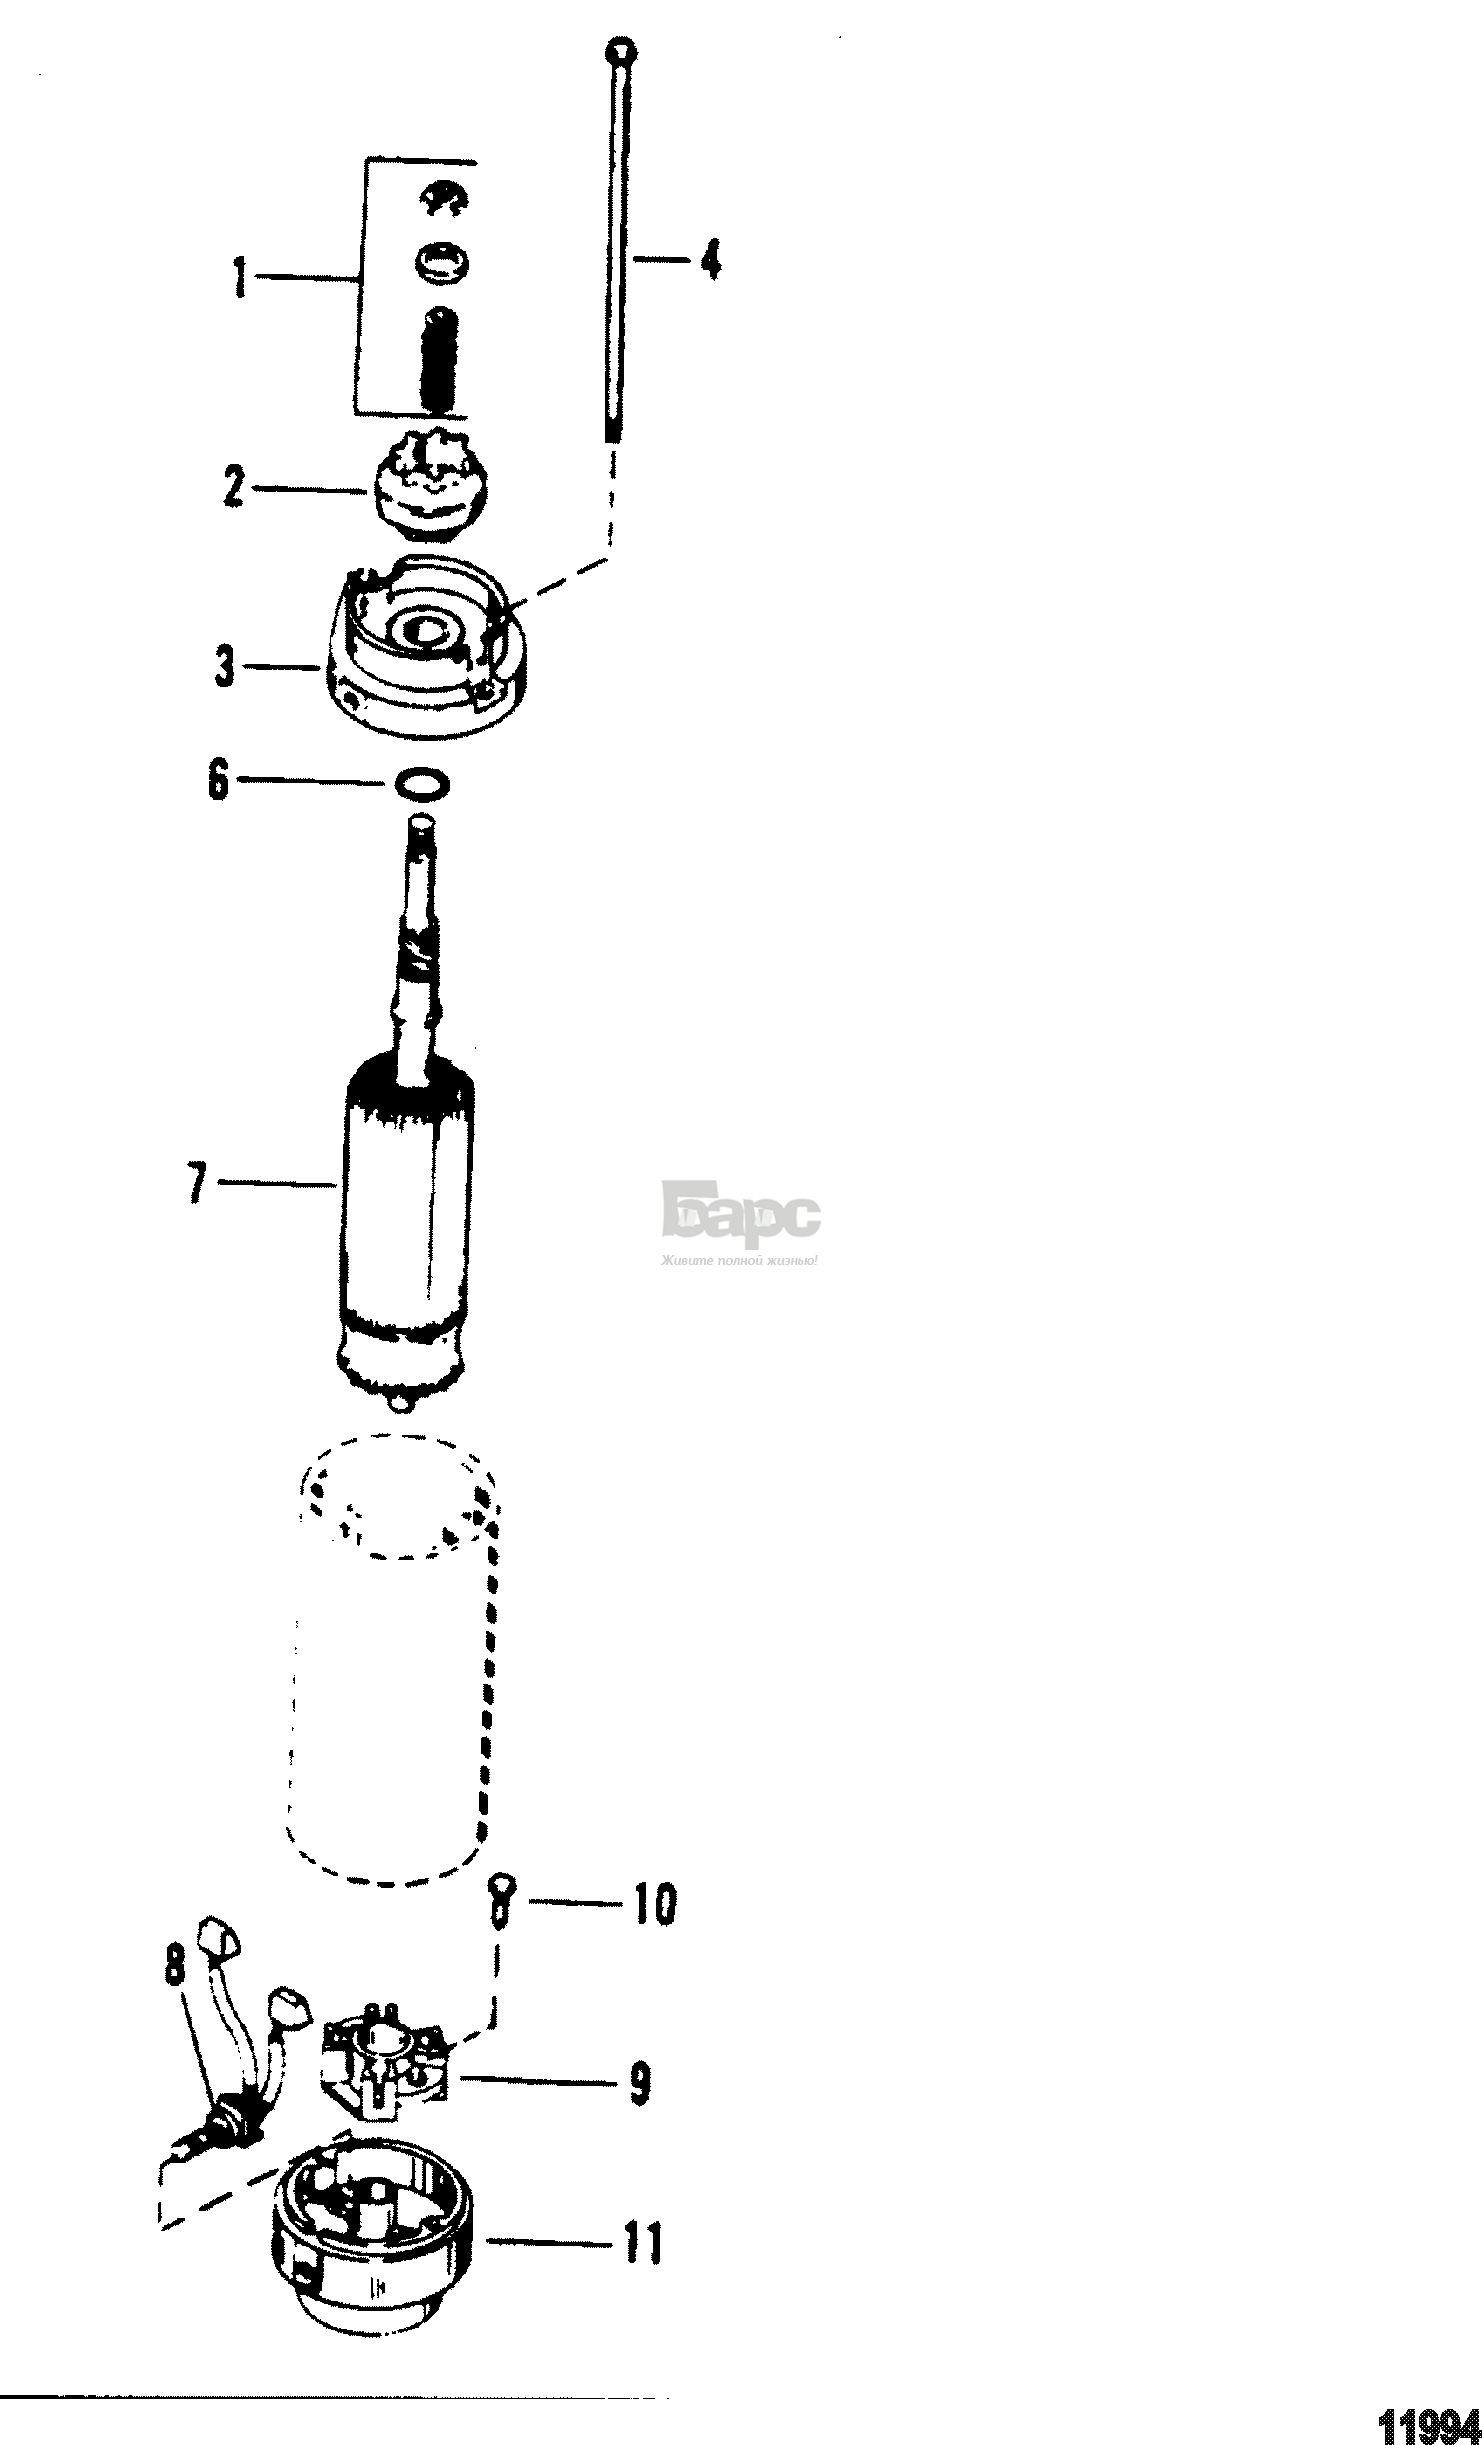 Starter Motor(American bosch #17183-28-M030SM)